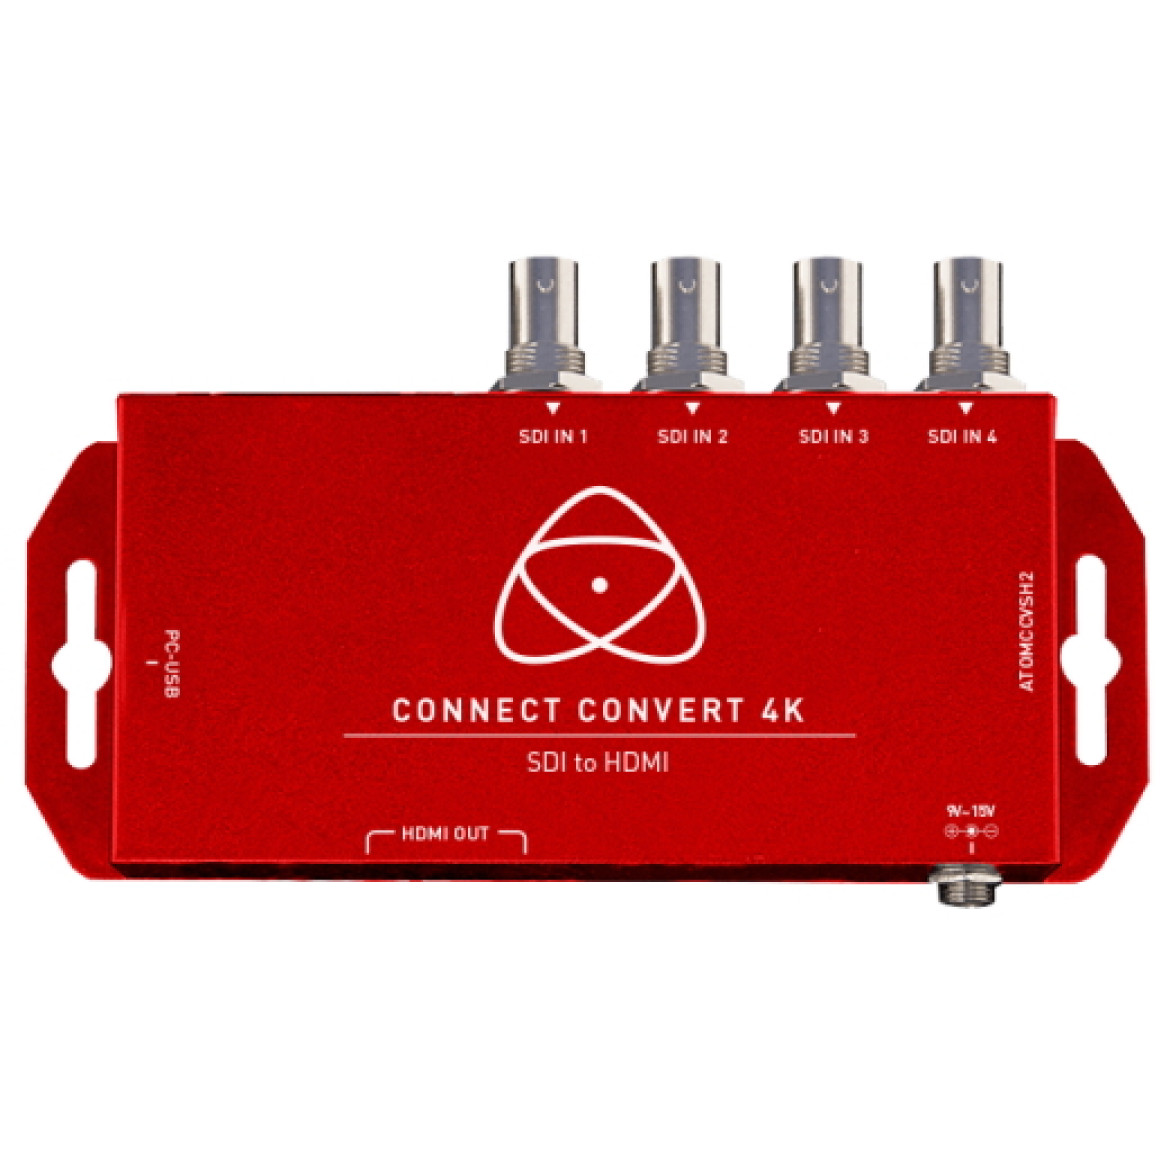 Atomos Connect Converter ATOMCCVSH2 - skalowanie do 4Kp60 przy konwersji SDI na HDMI z wbudowanym kodem czasowym, WFM, Audio za pośrednictwem SDI Quadlink 12/6/3 / 1,5G. Konwertuje na HDMI lub zapętla do 12G-SDI.